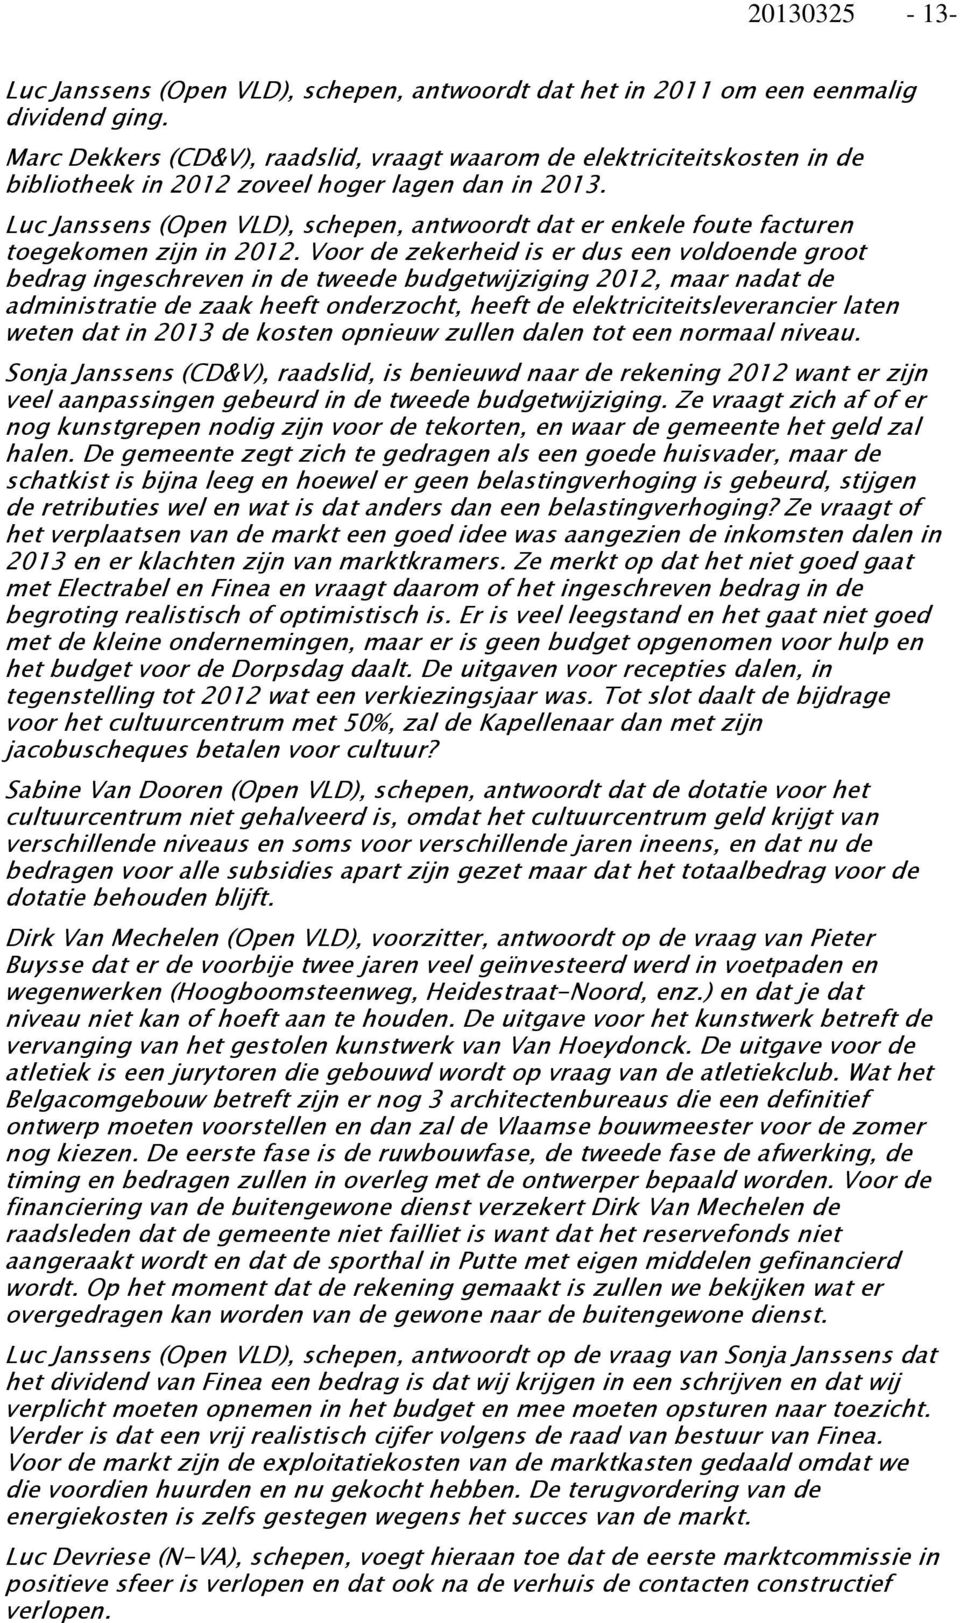 Luc Janssens (Open VLD), schepen, antwoordt dat er enkele foute facturen toegekomen zijn in 2012.